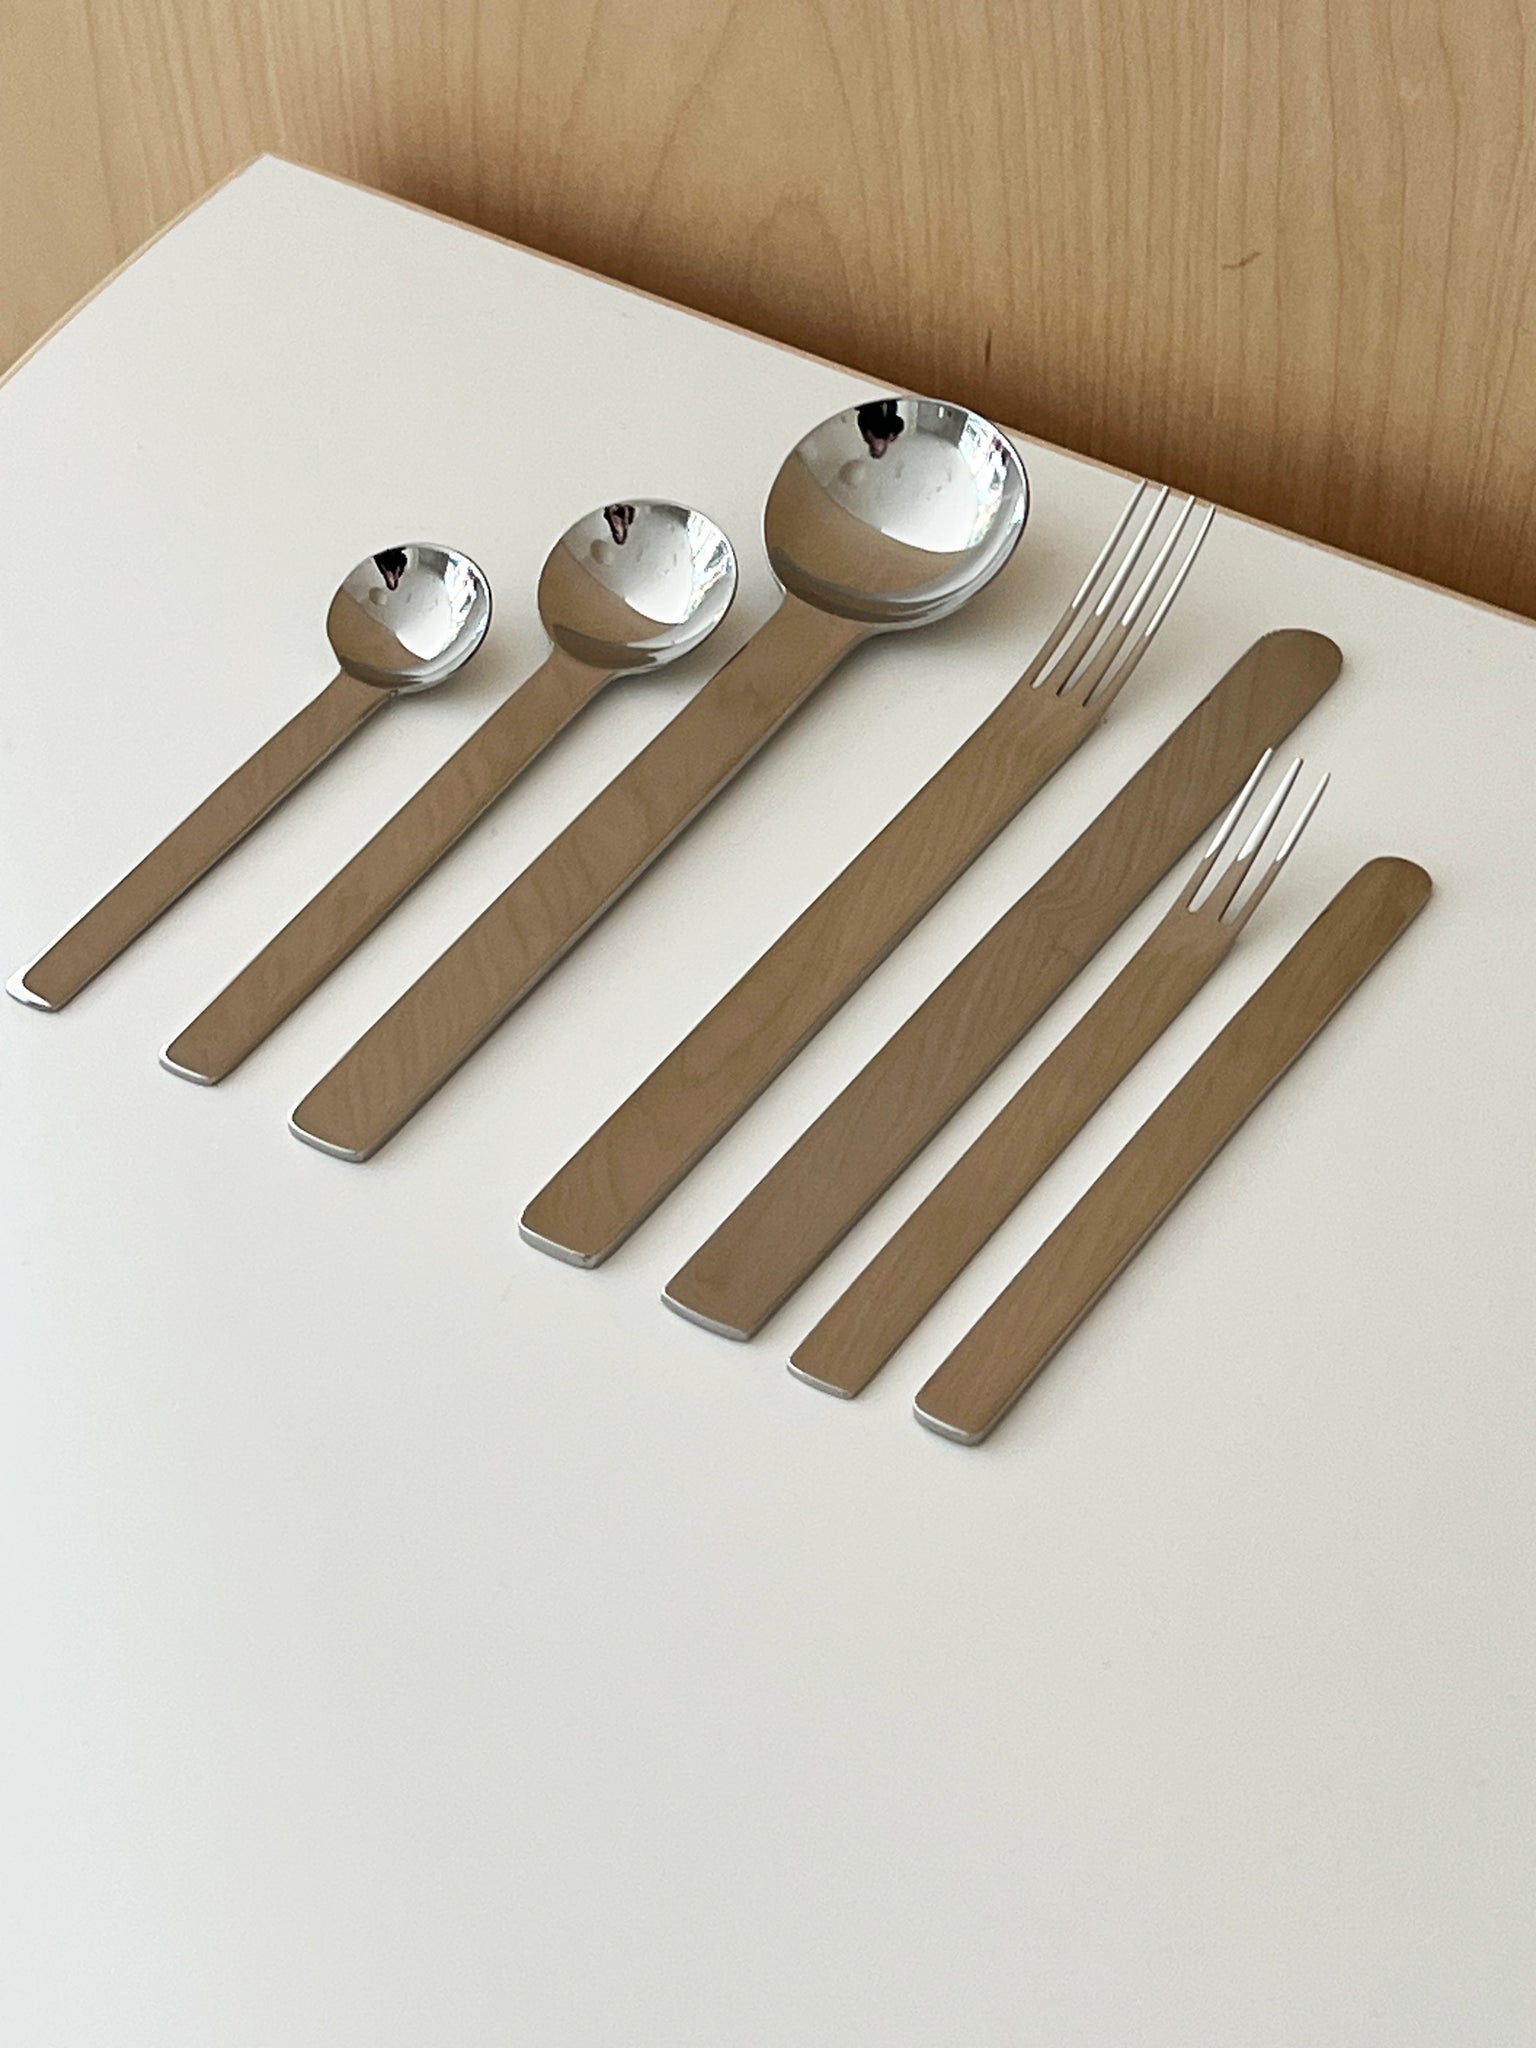 Stainless Steel Flatware 7-Piece Set by Japense Designer Takenobu Igarashi